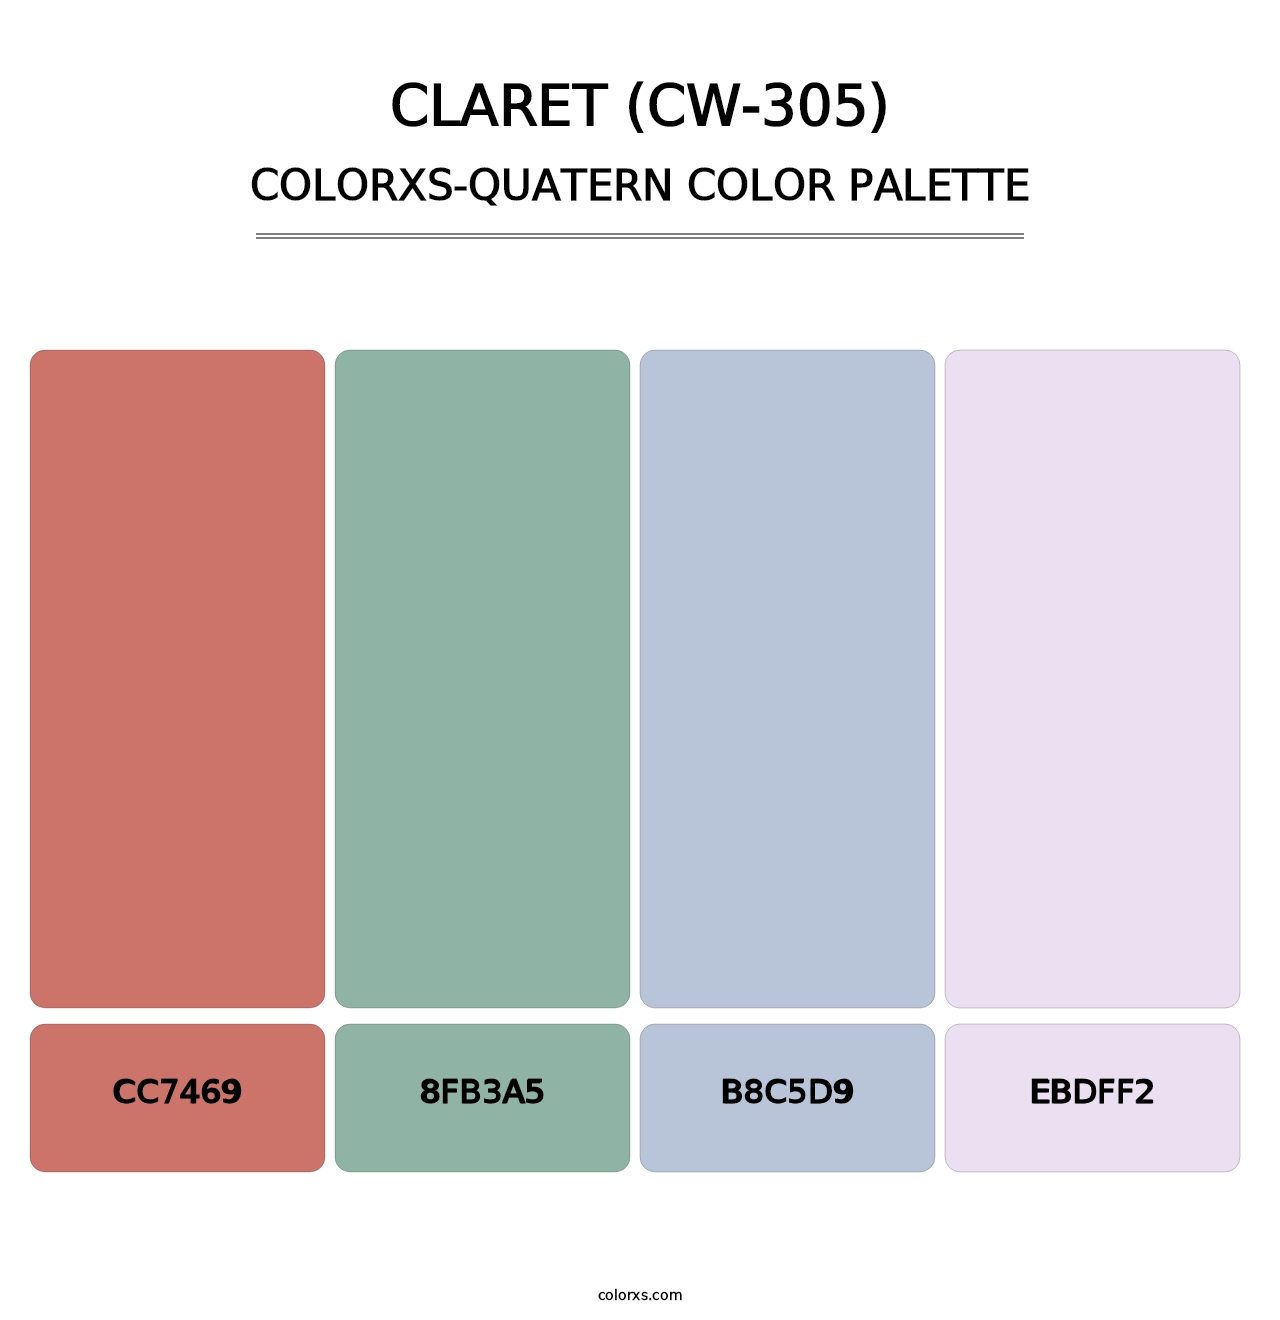 Claret (CW-305) - Colorxs Quatern Palette